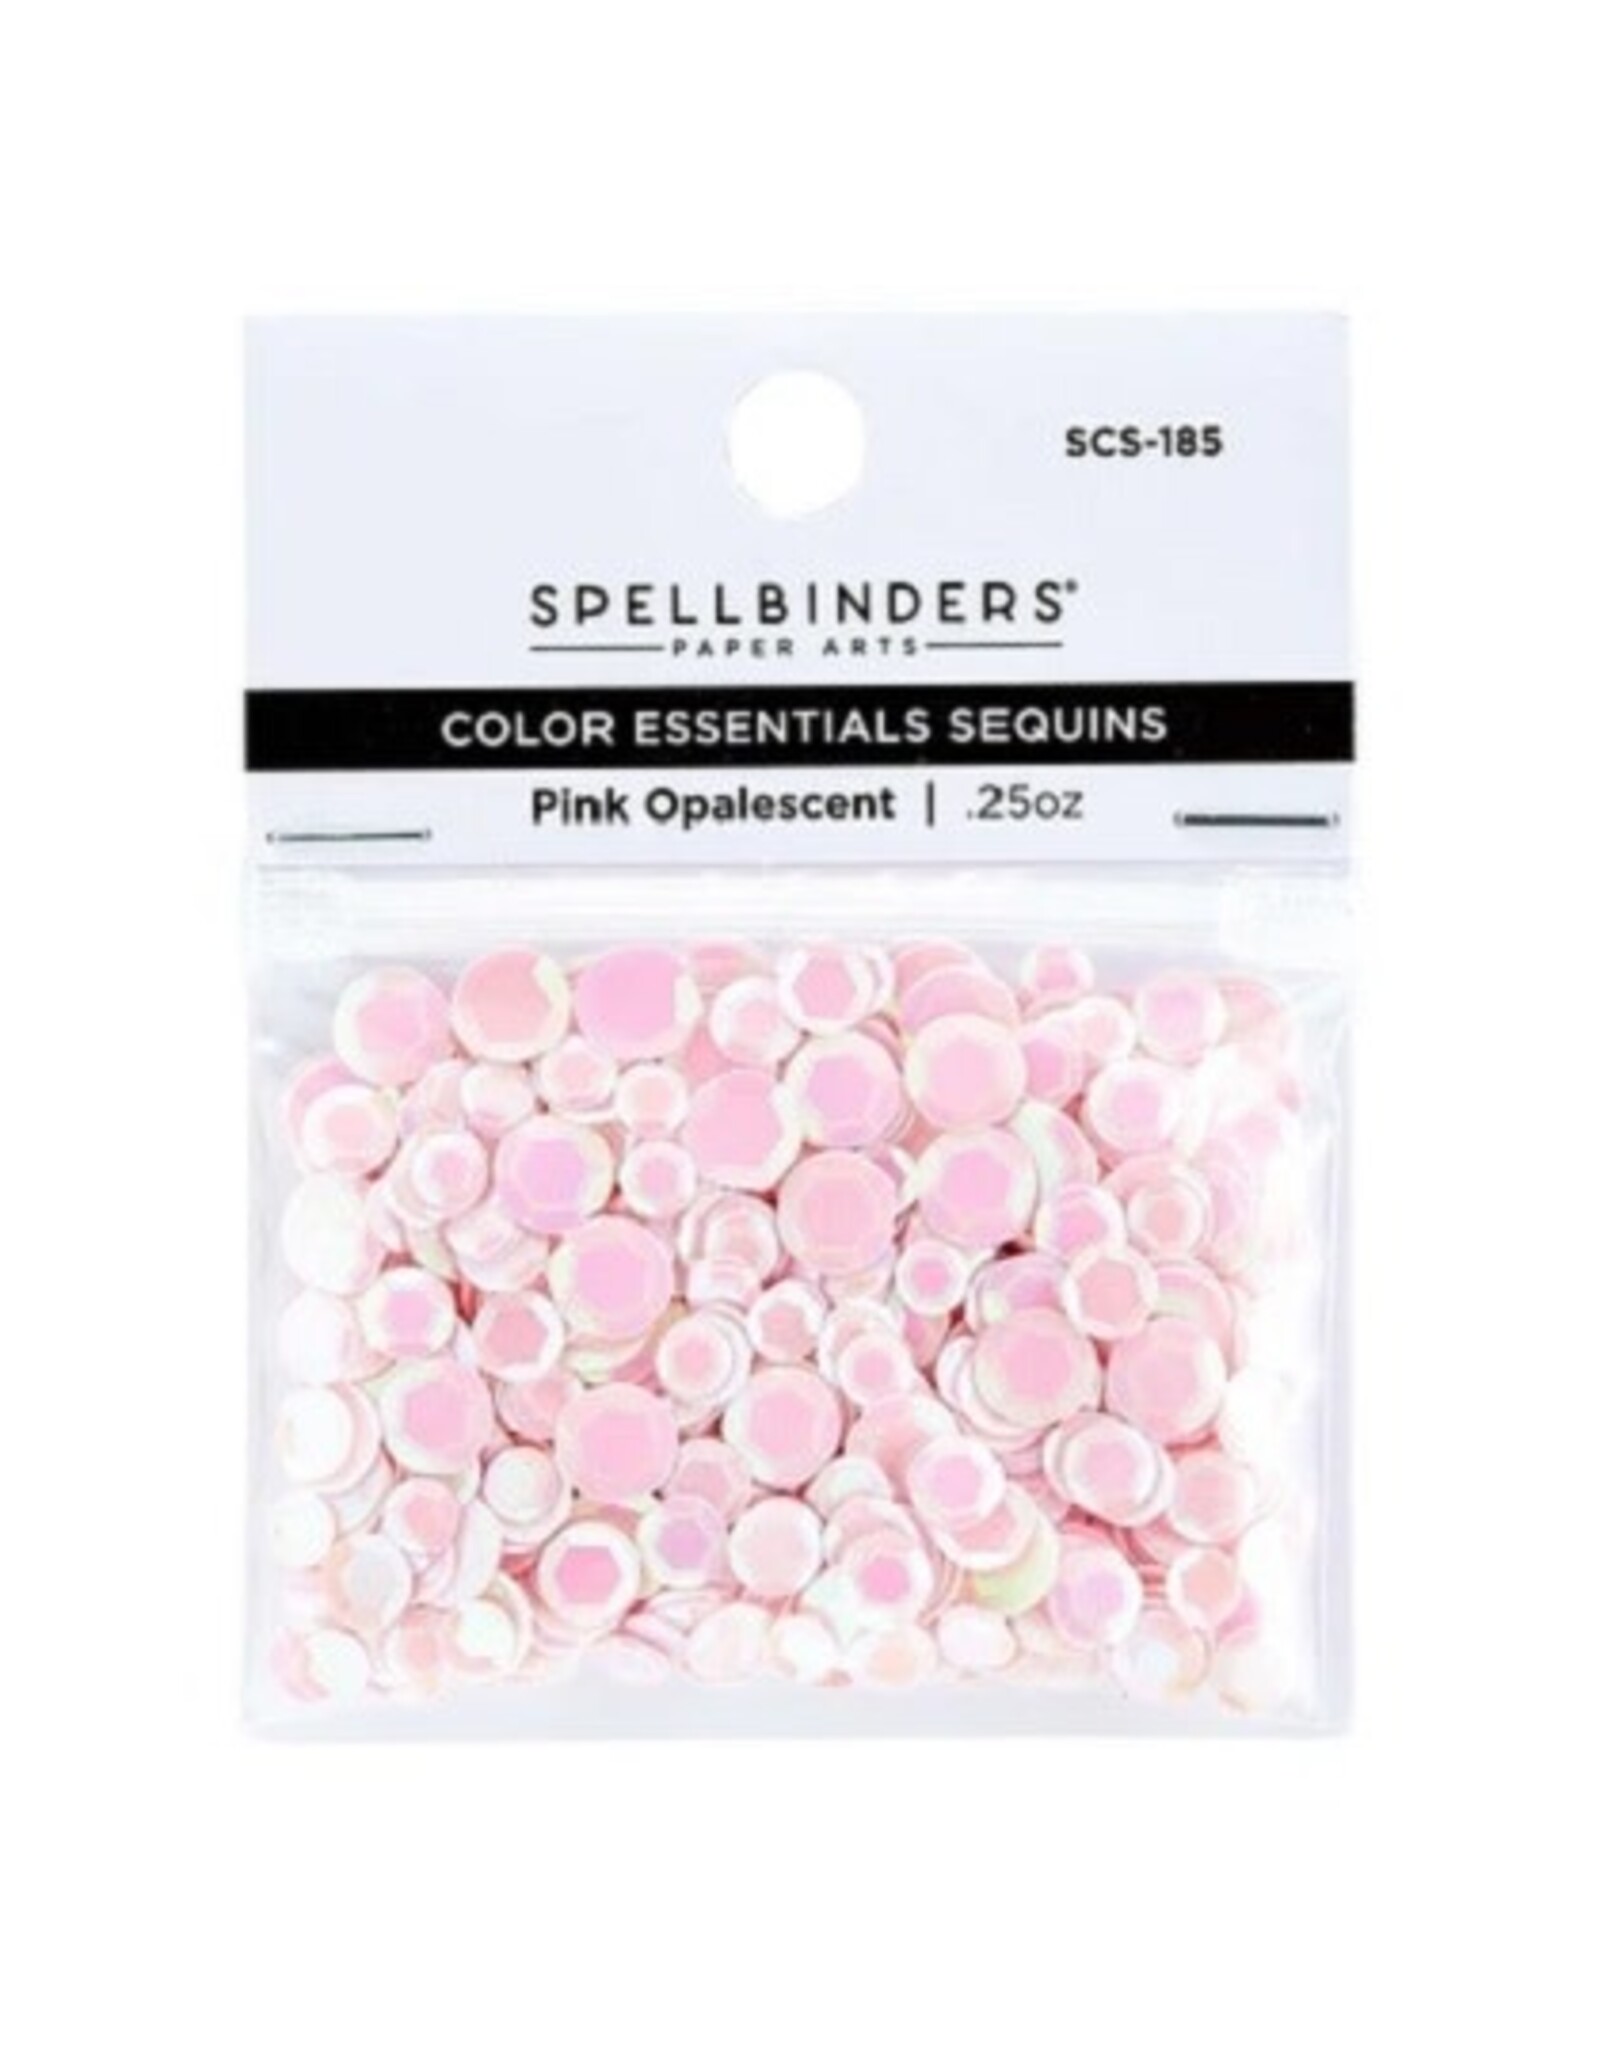 Spellbinders Pink Opalescent Color Essentials Sequins